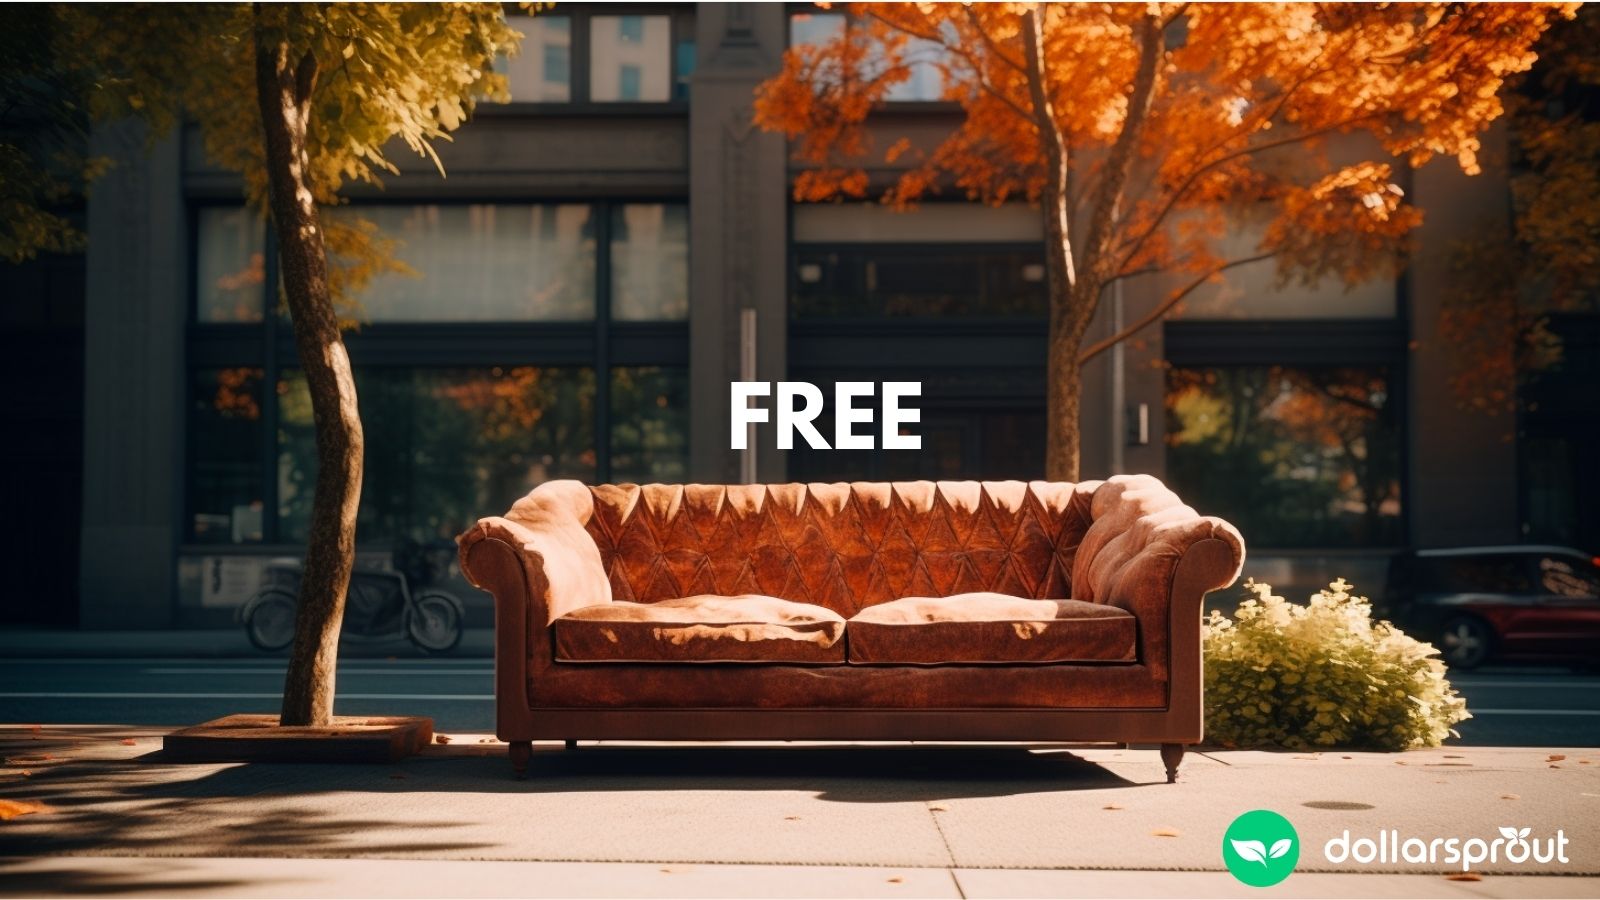 Free Furniture Craigslist